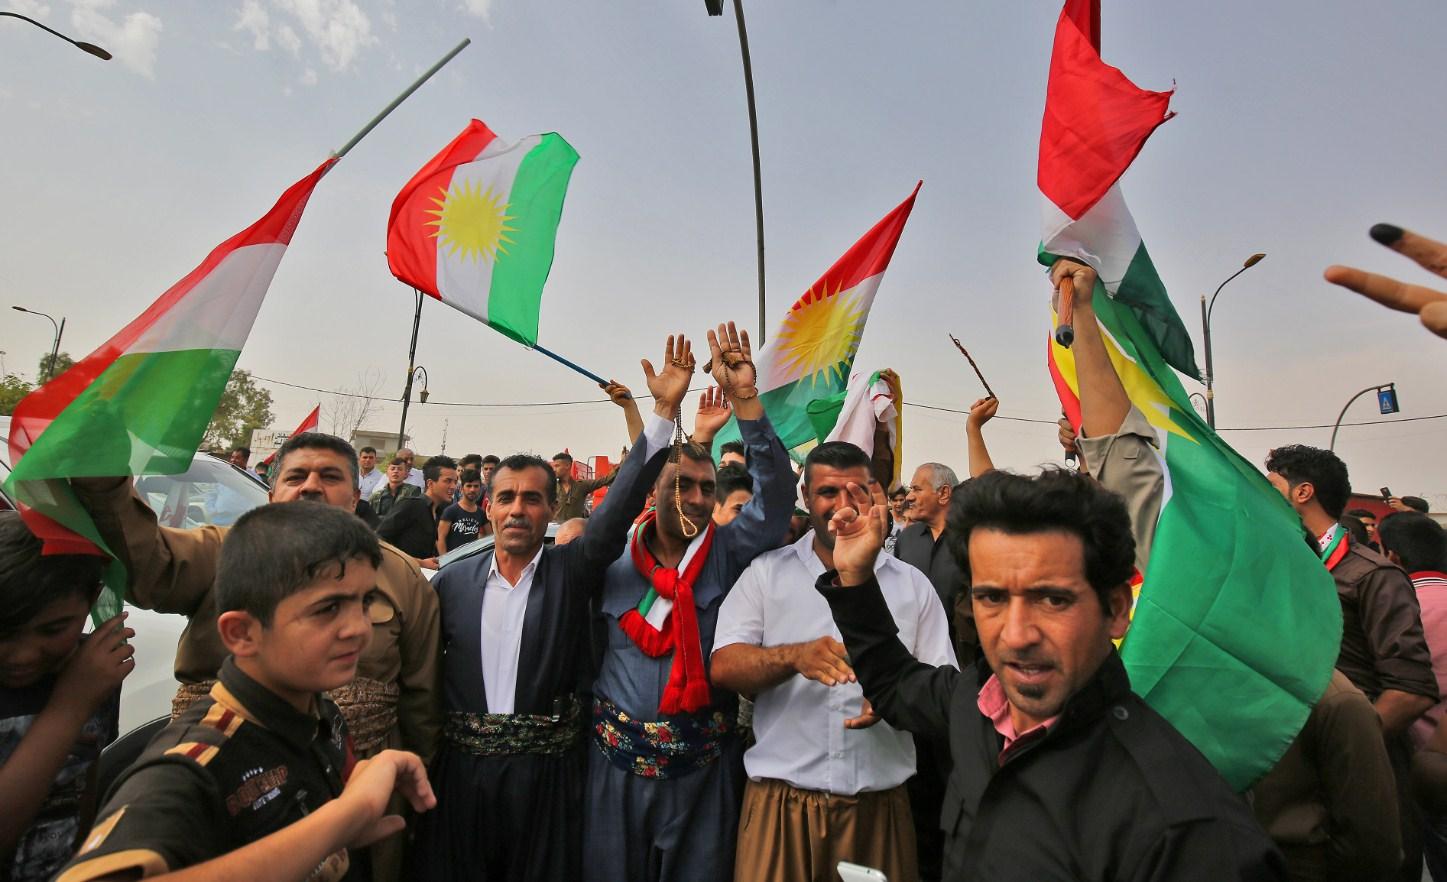 Izlaznost na referendumu o nezavisnosti iračkog Kurdistana 76 posto, glasanje traje još sat vremena